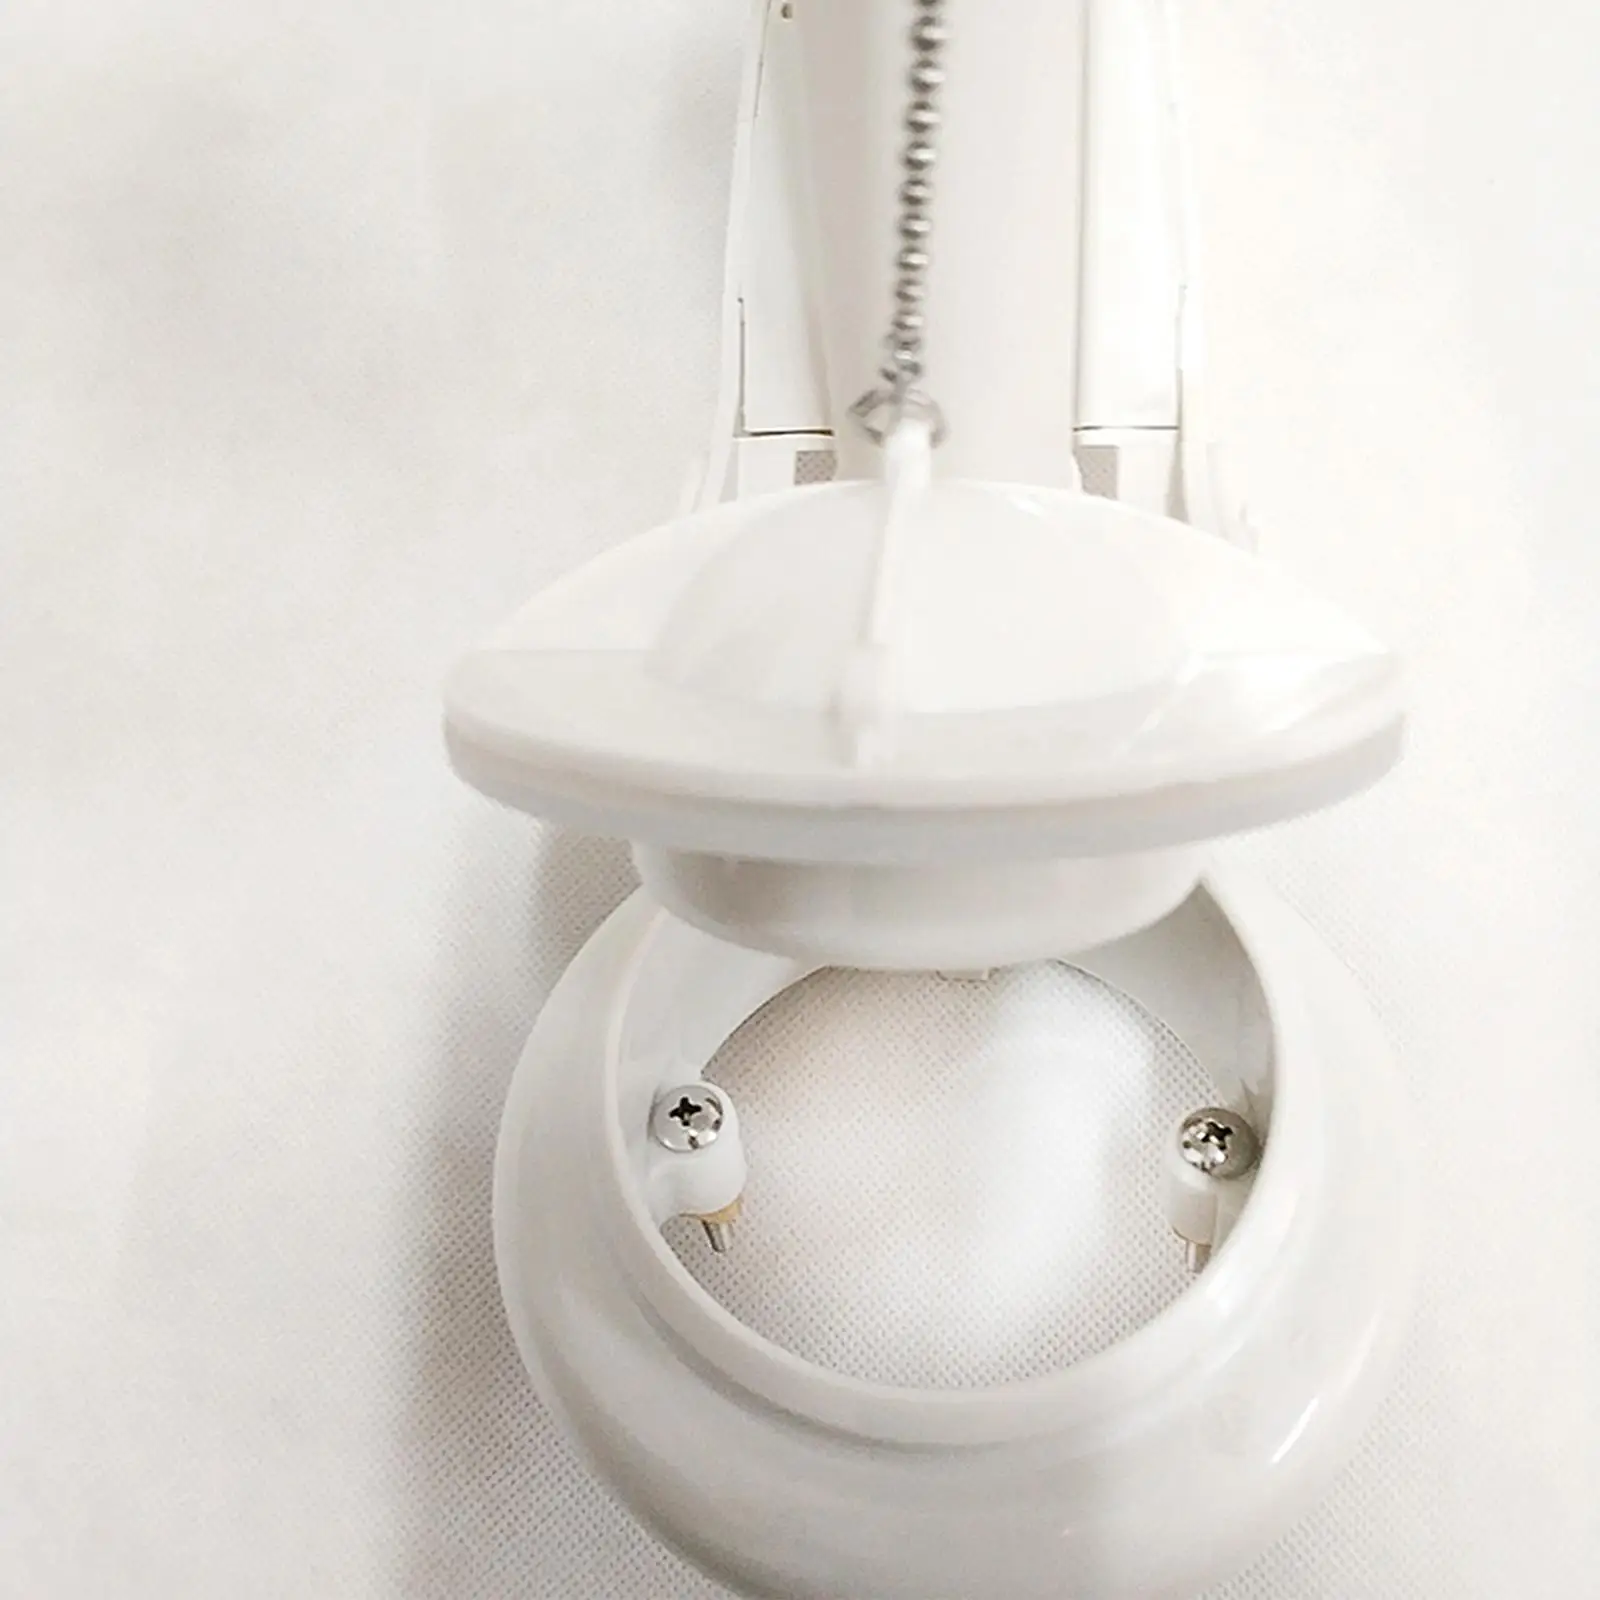 Toilet Flush Valves Toilet Tank Adjustable Height High Pressure Easy Install